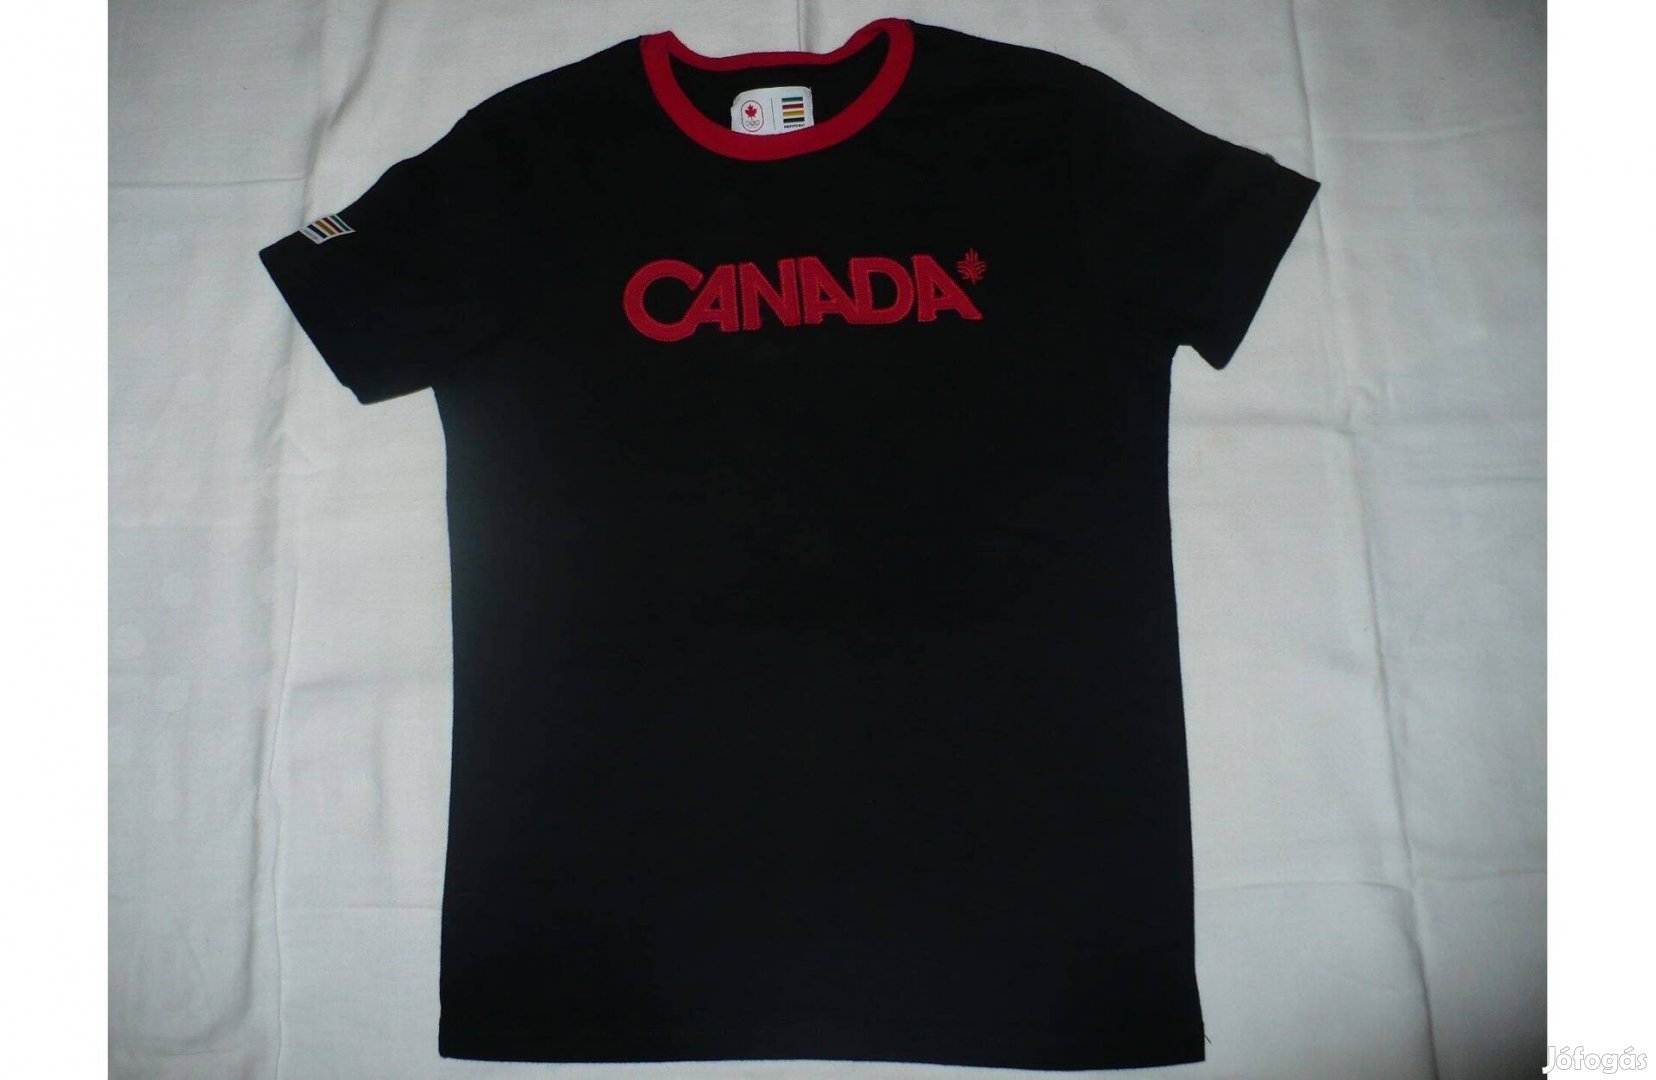 Olimpiai gyermek póló Kanadából, 7-8 évesre